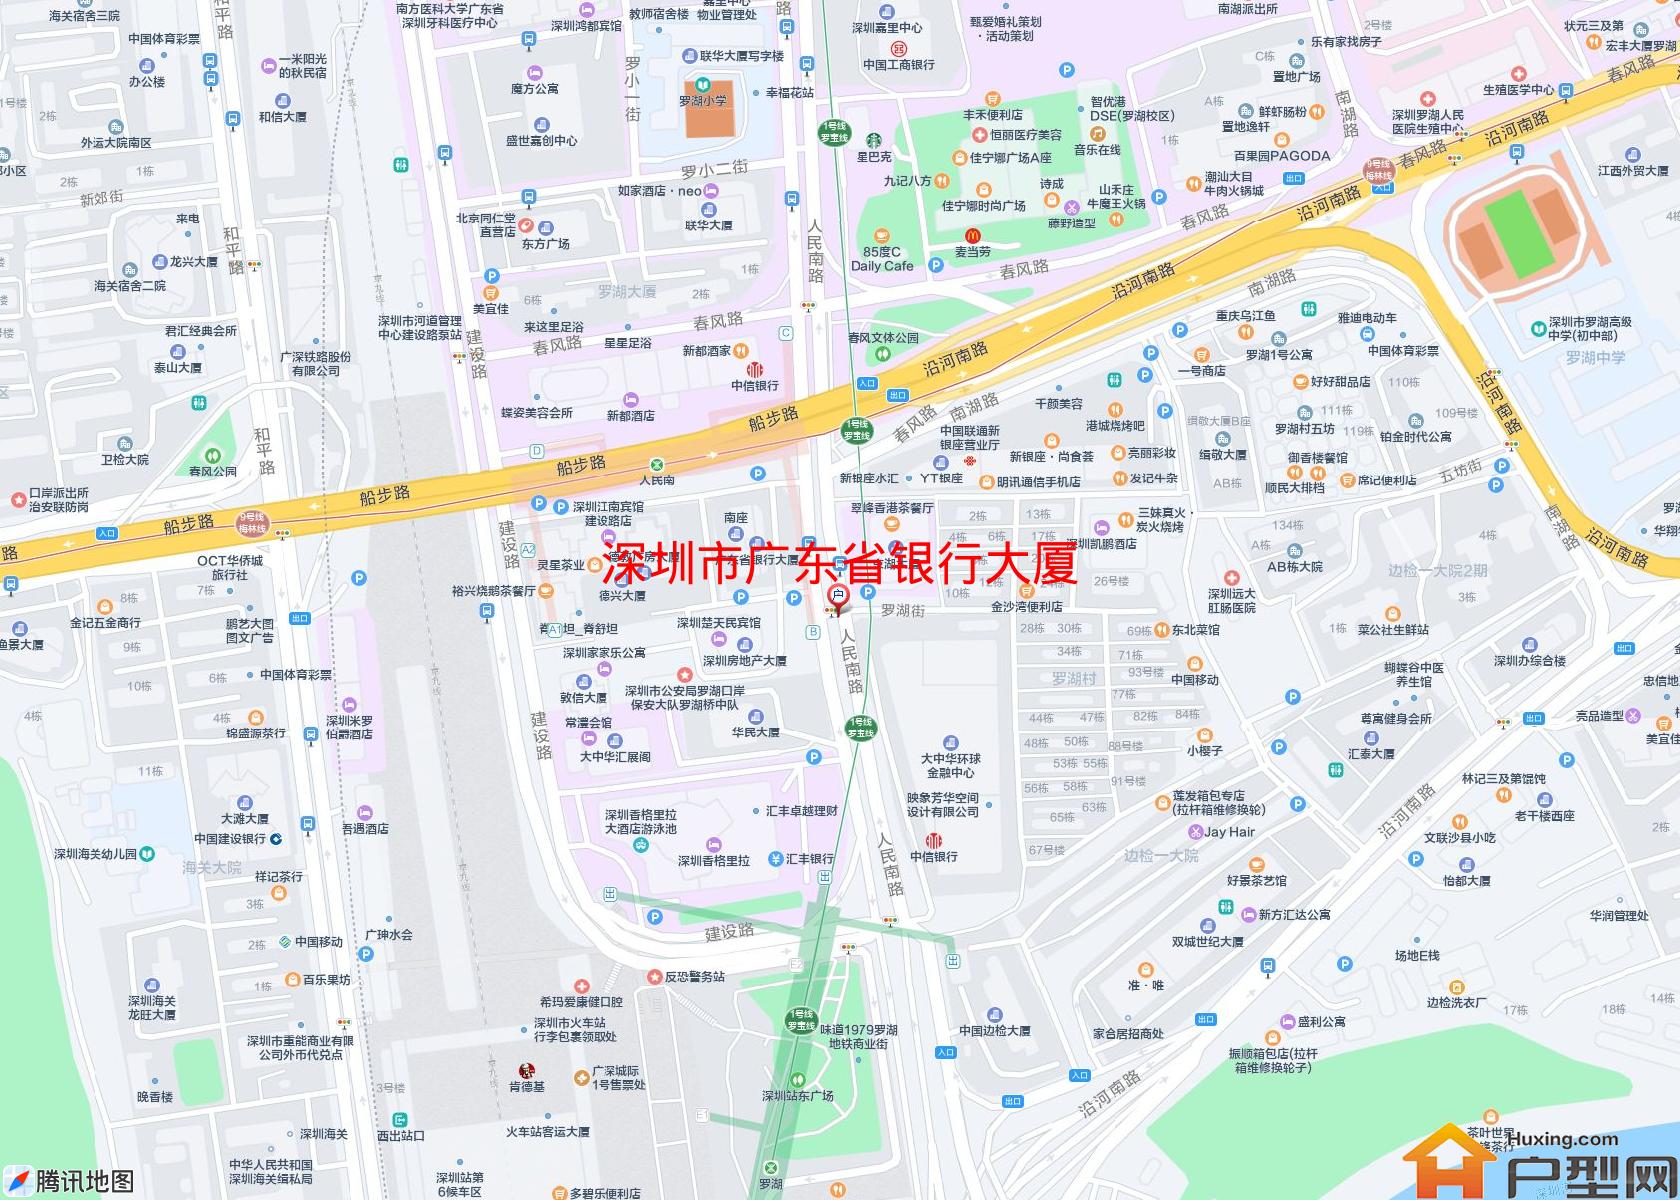 广东省银行大厦小区 - 户型网